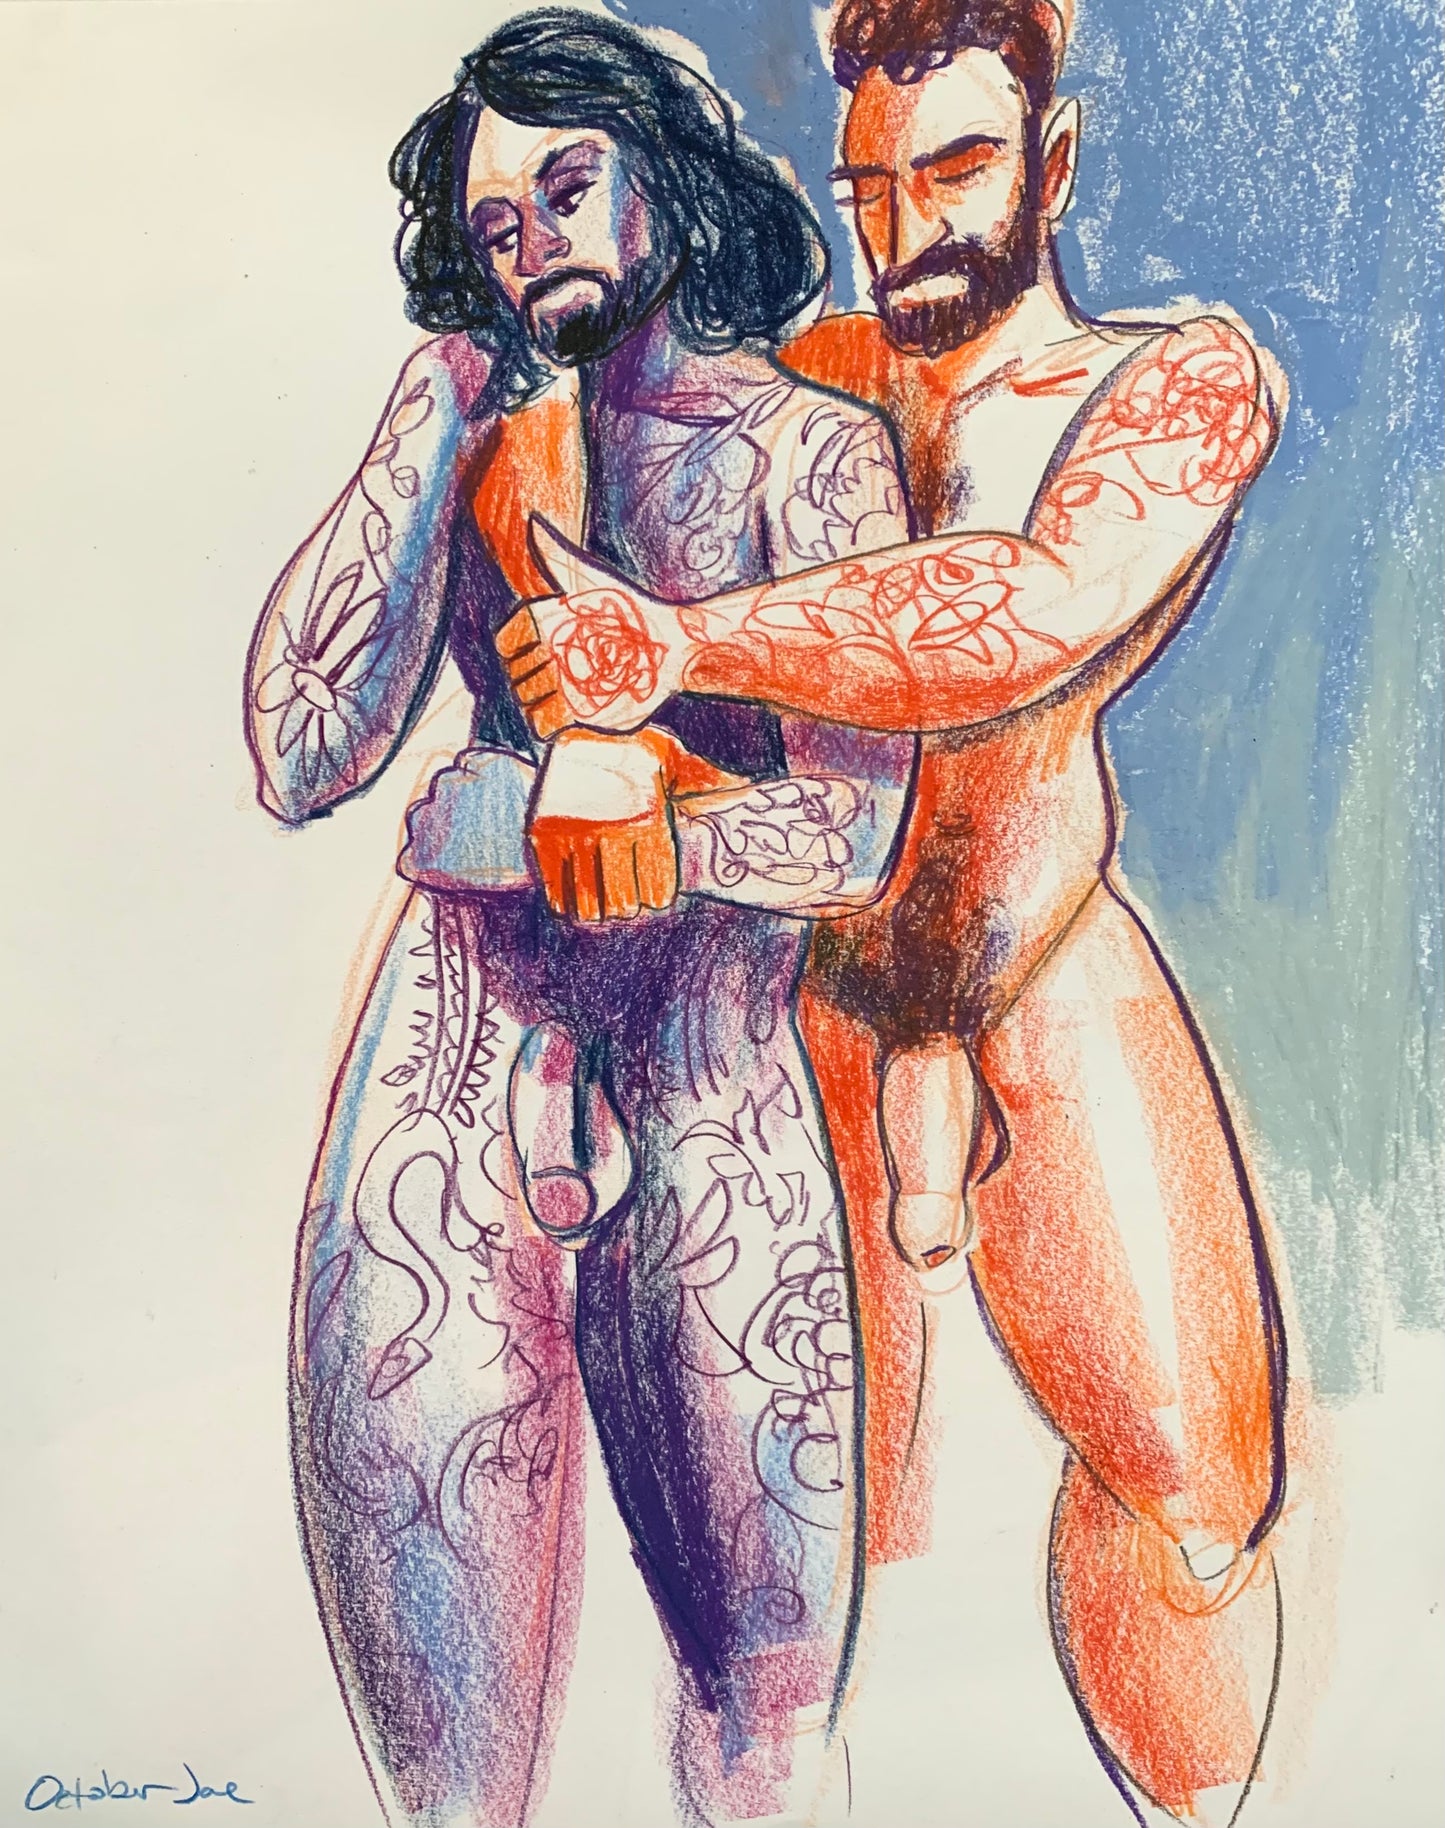 Joe & Musa Embrace #1 - Original Drawing